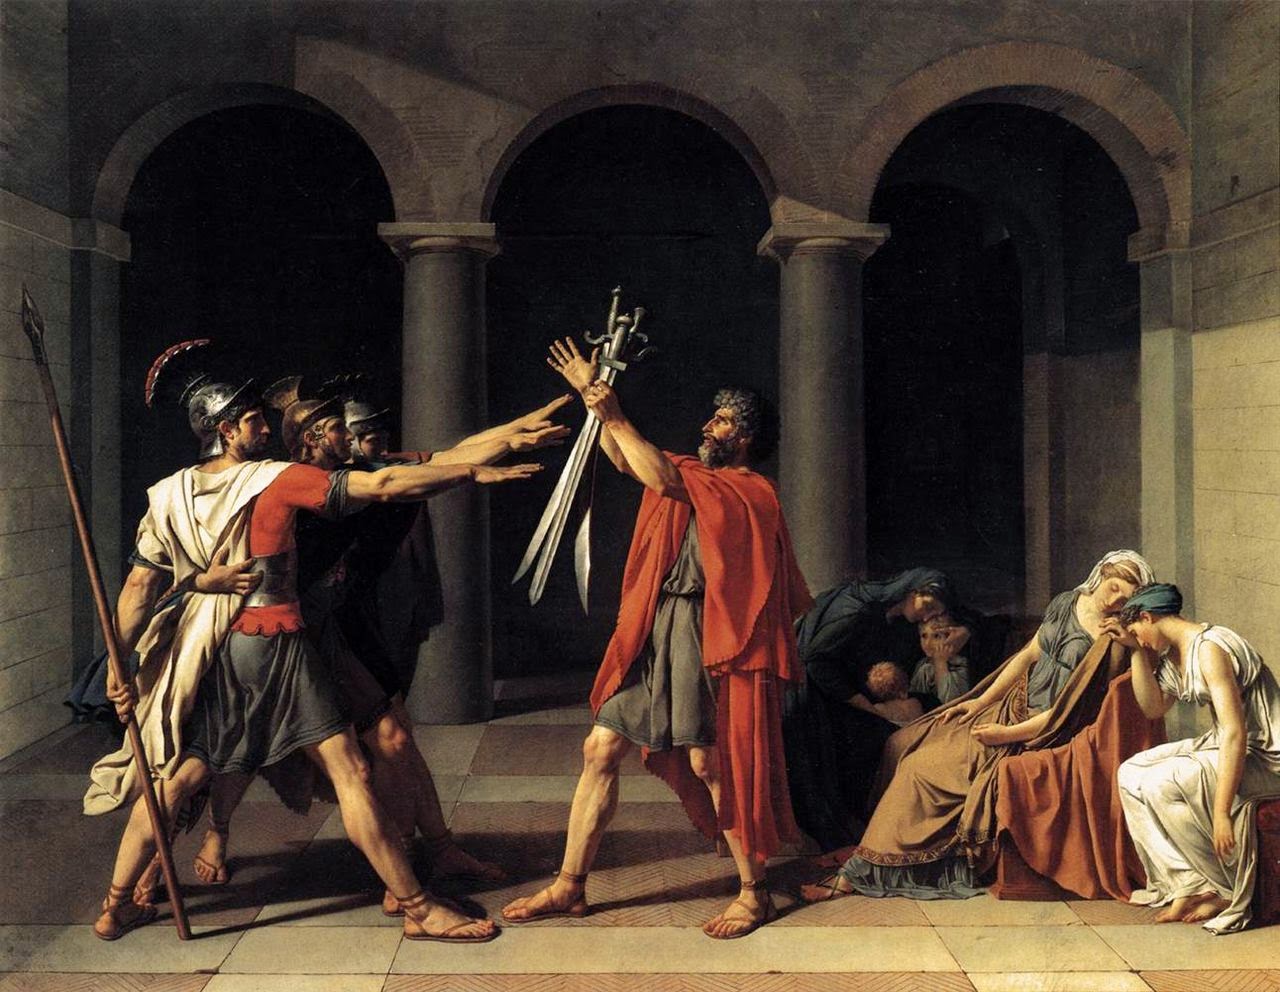  El famoso cuadro “El juramento de los Horacios”, del pintor Jacques-Louis David.